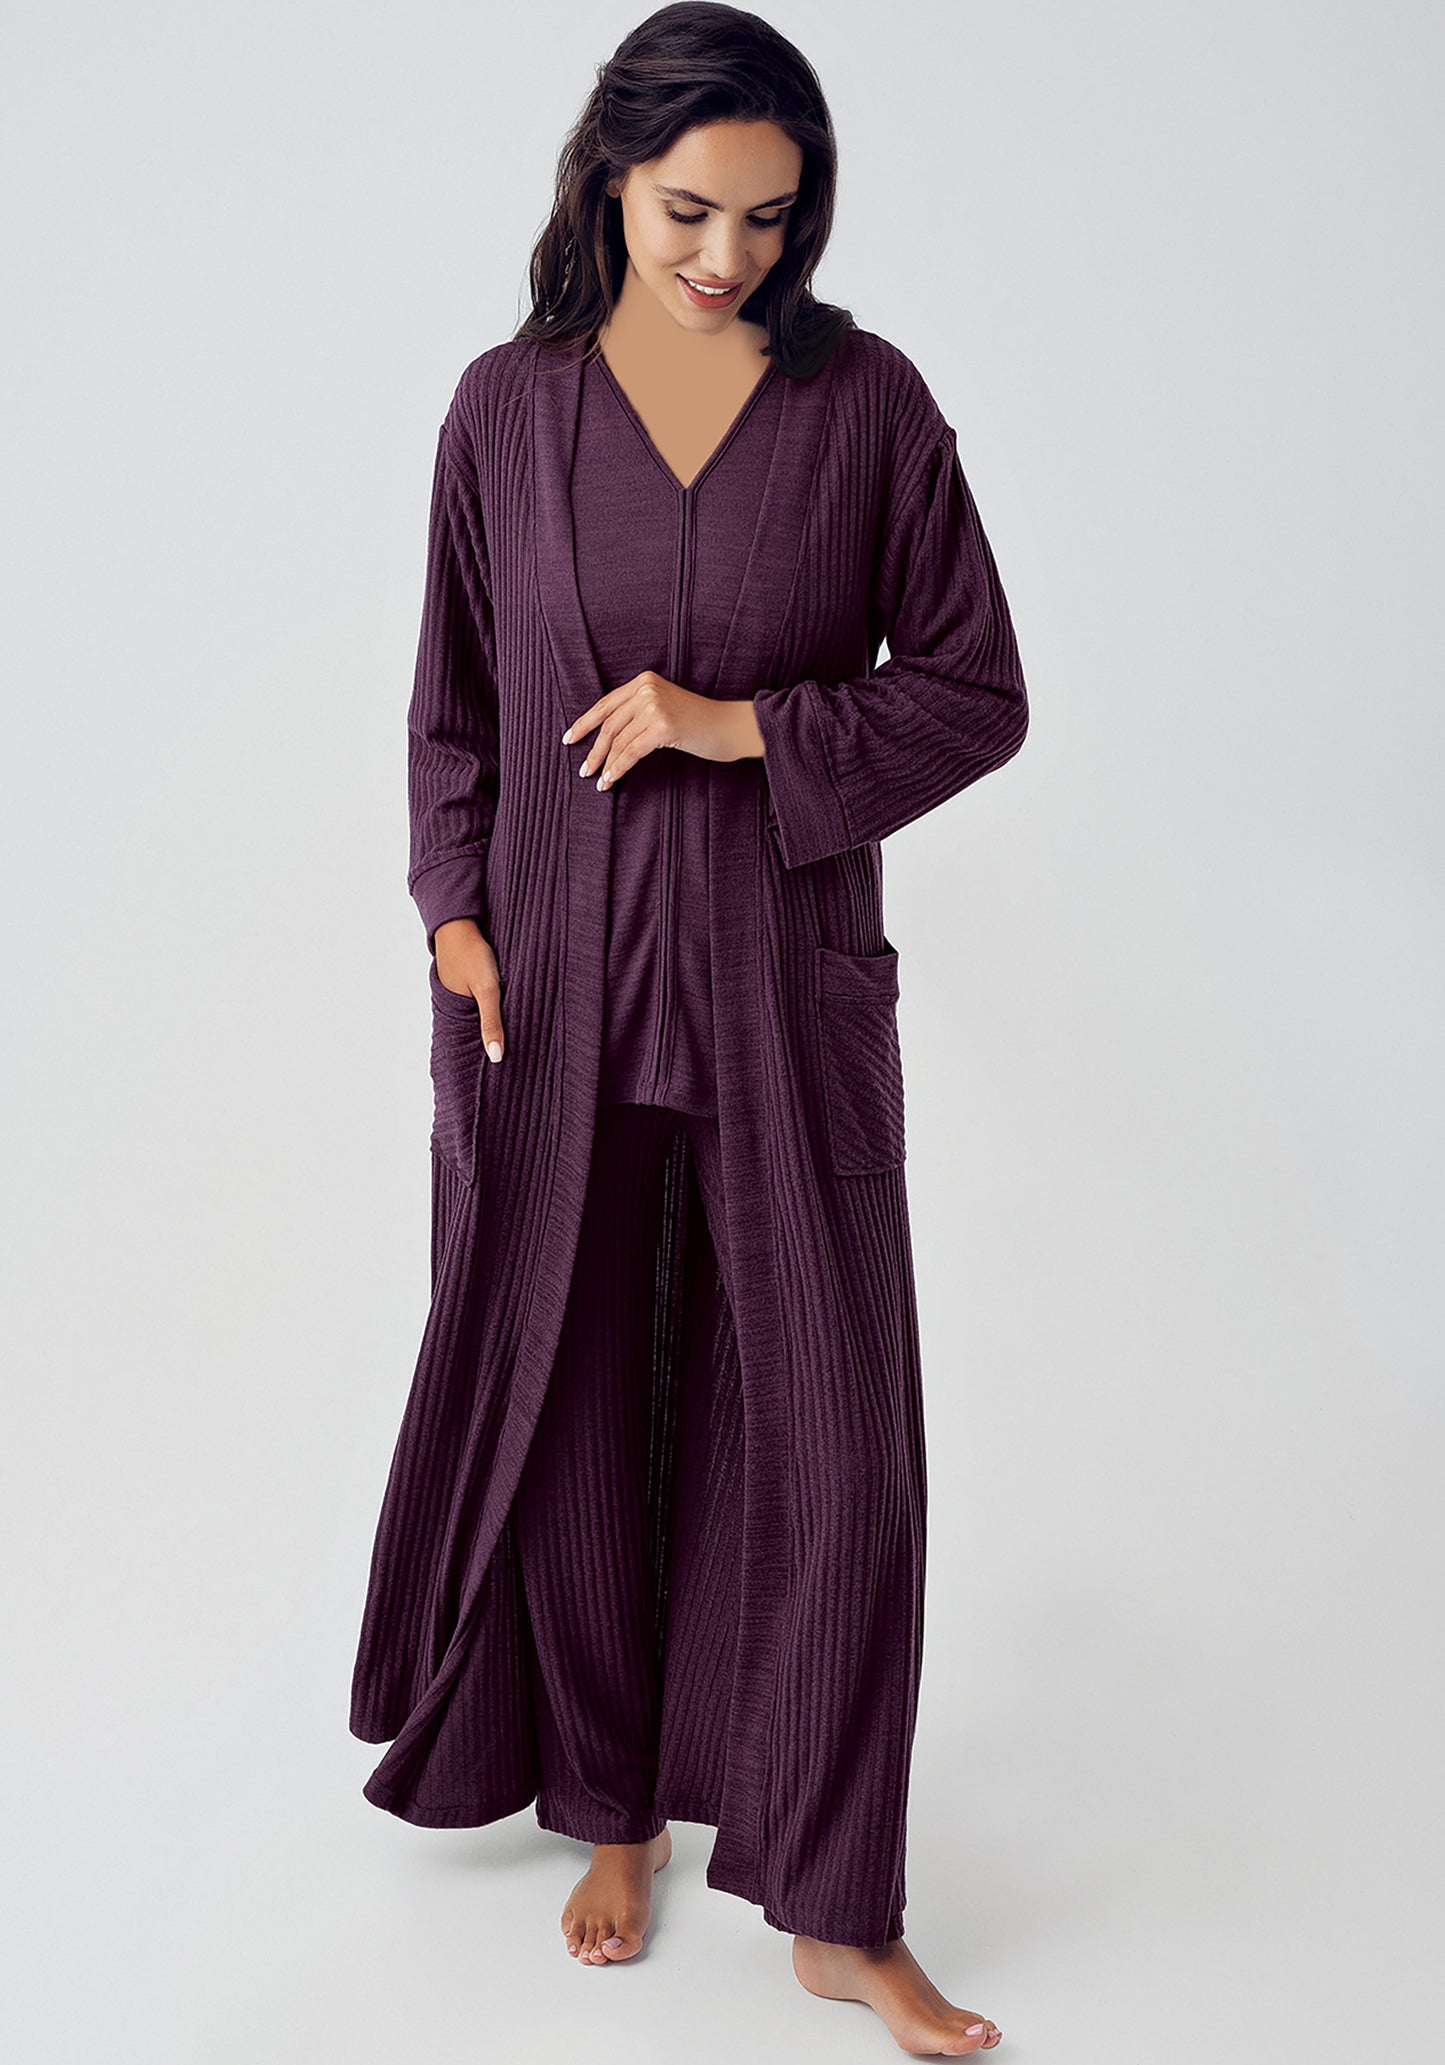 S&L Jacquard 3 Piece Robe Pajama Set